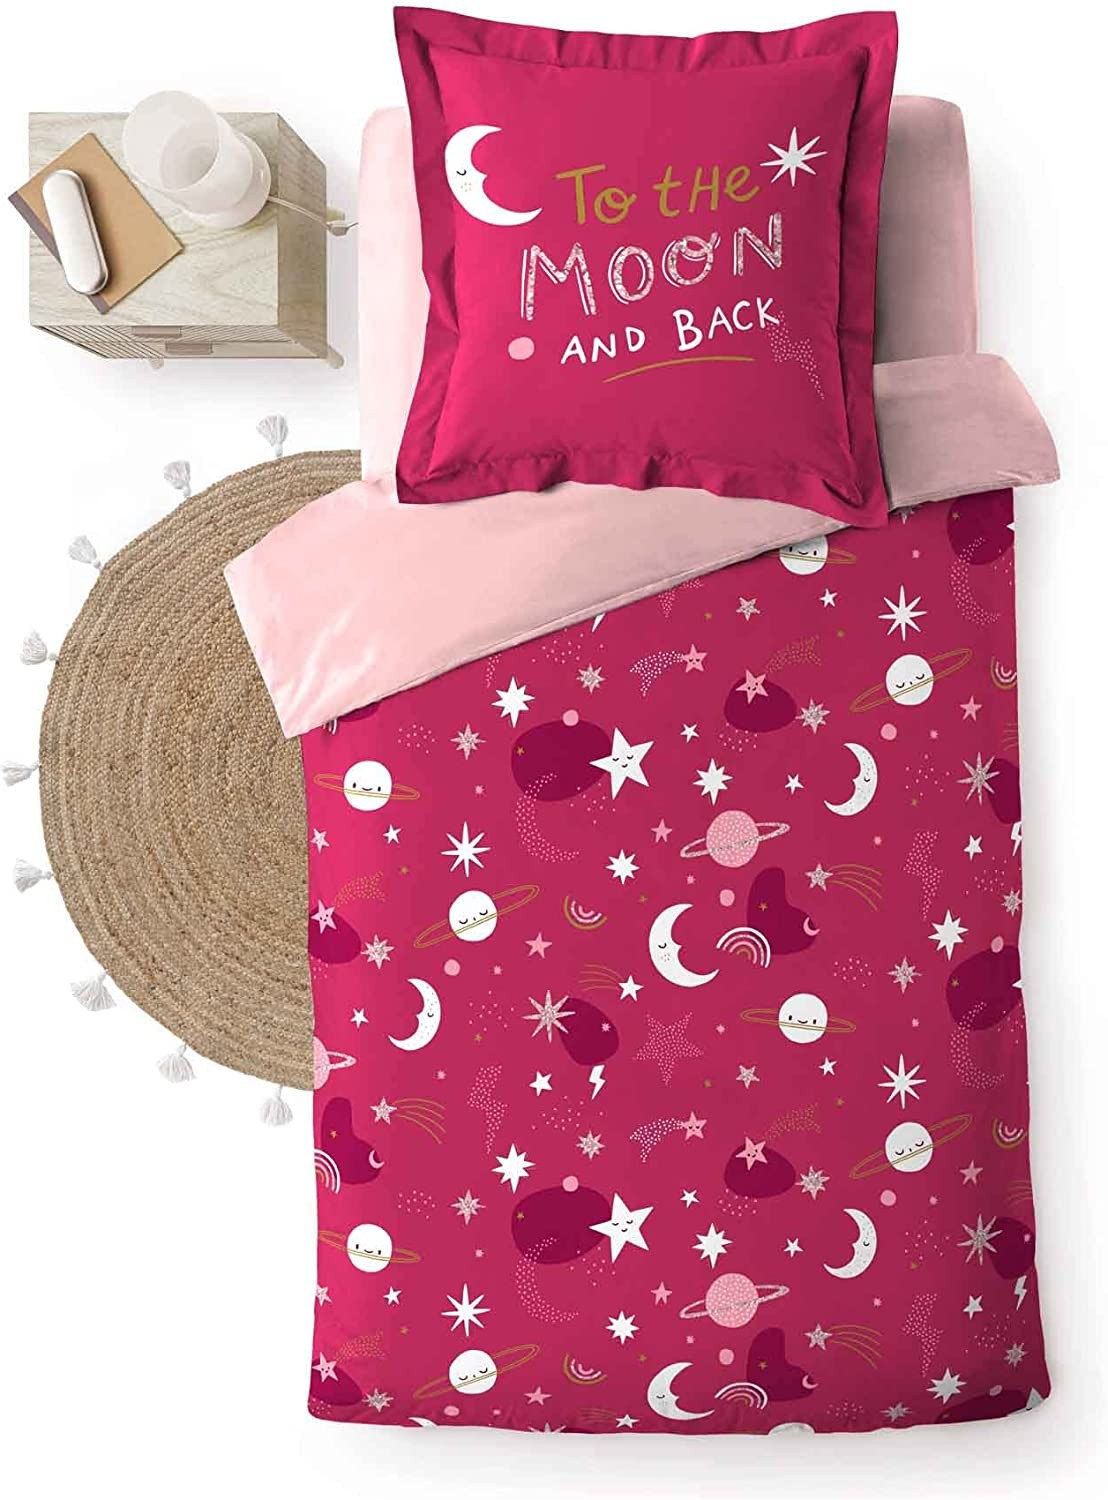 Parure Housse de Couette enfant 140 x 200 cm Moonlight Rose Etoiles lunes